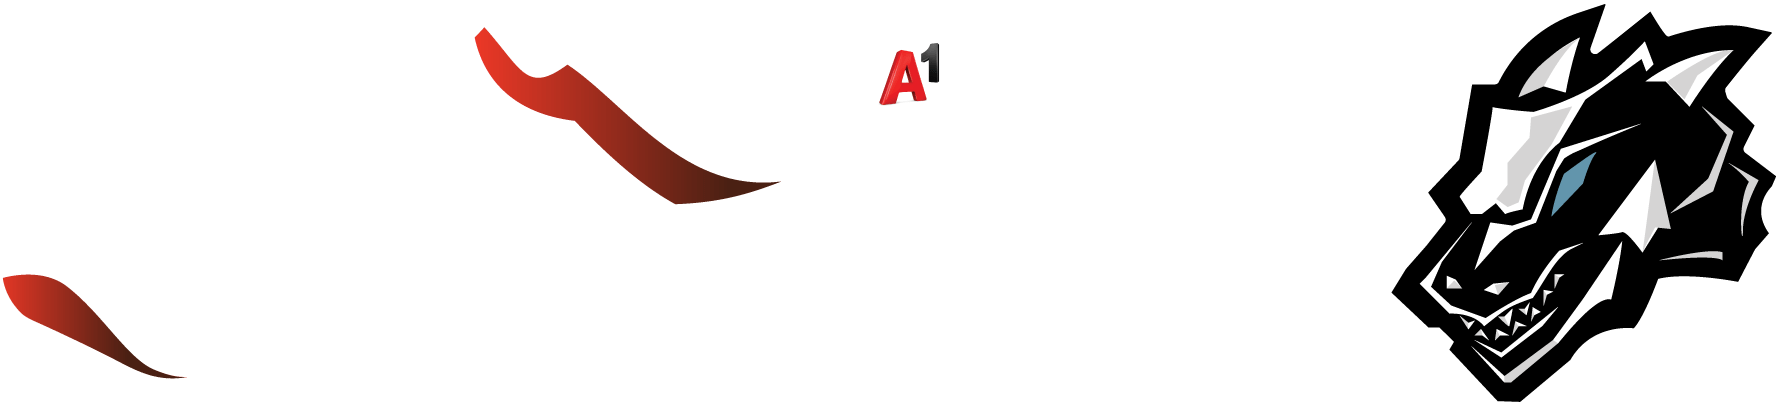 A1 vulkanlan Logos X min